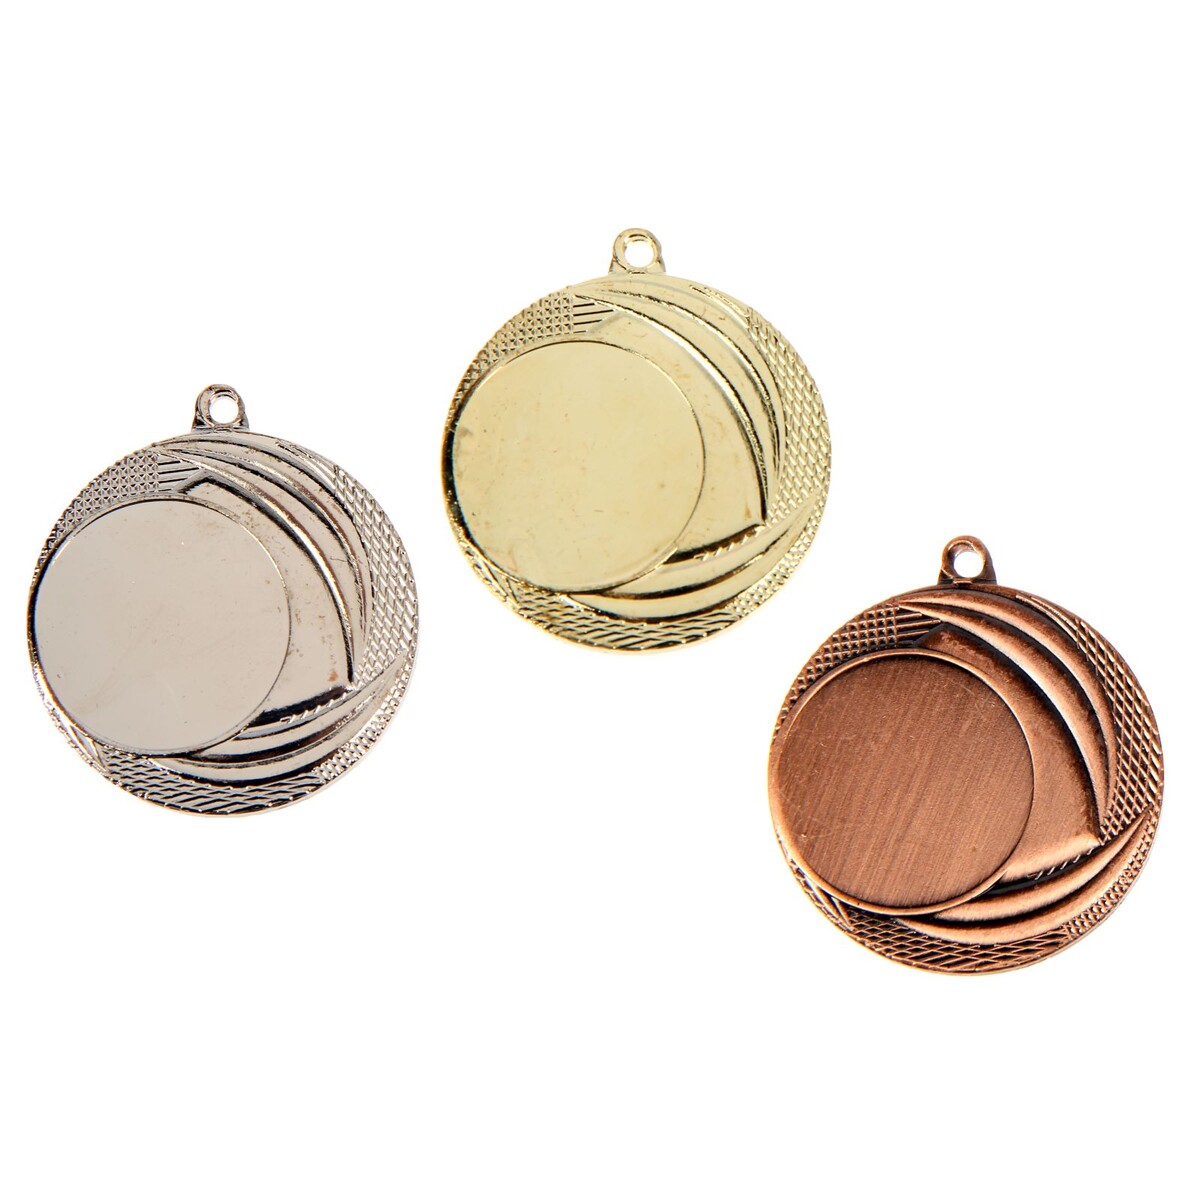 Медаль под нанесение 055 диам 4 см. цвет бронз. без ленты медаль под нанесение диам 4 см бронз без ленты